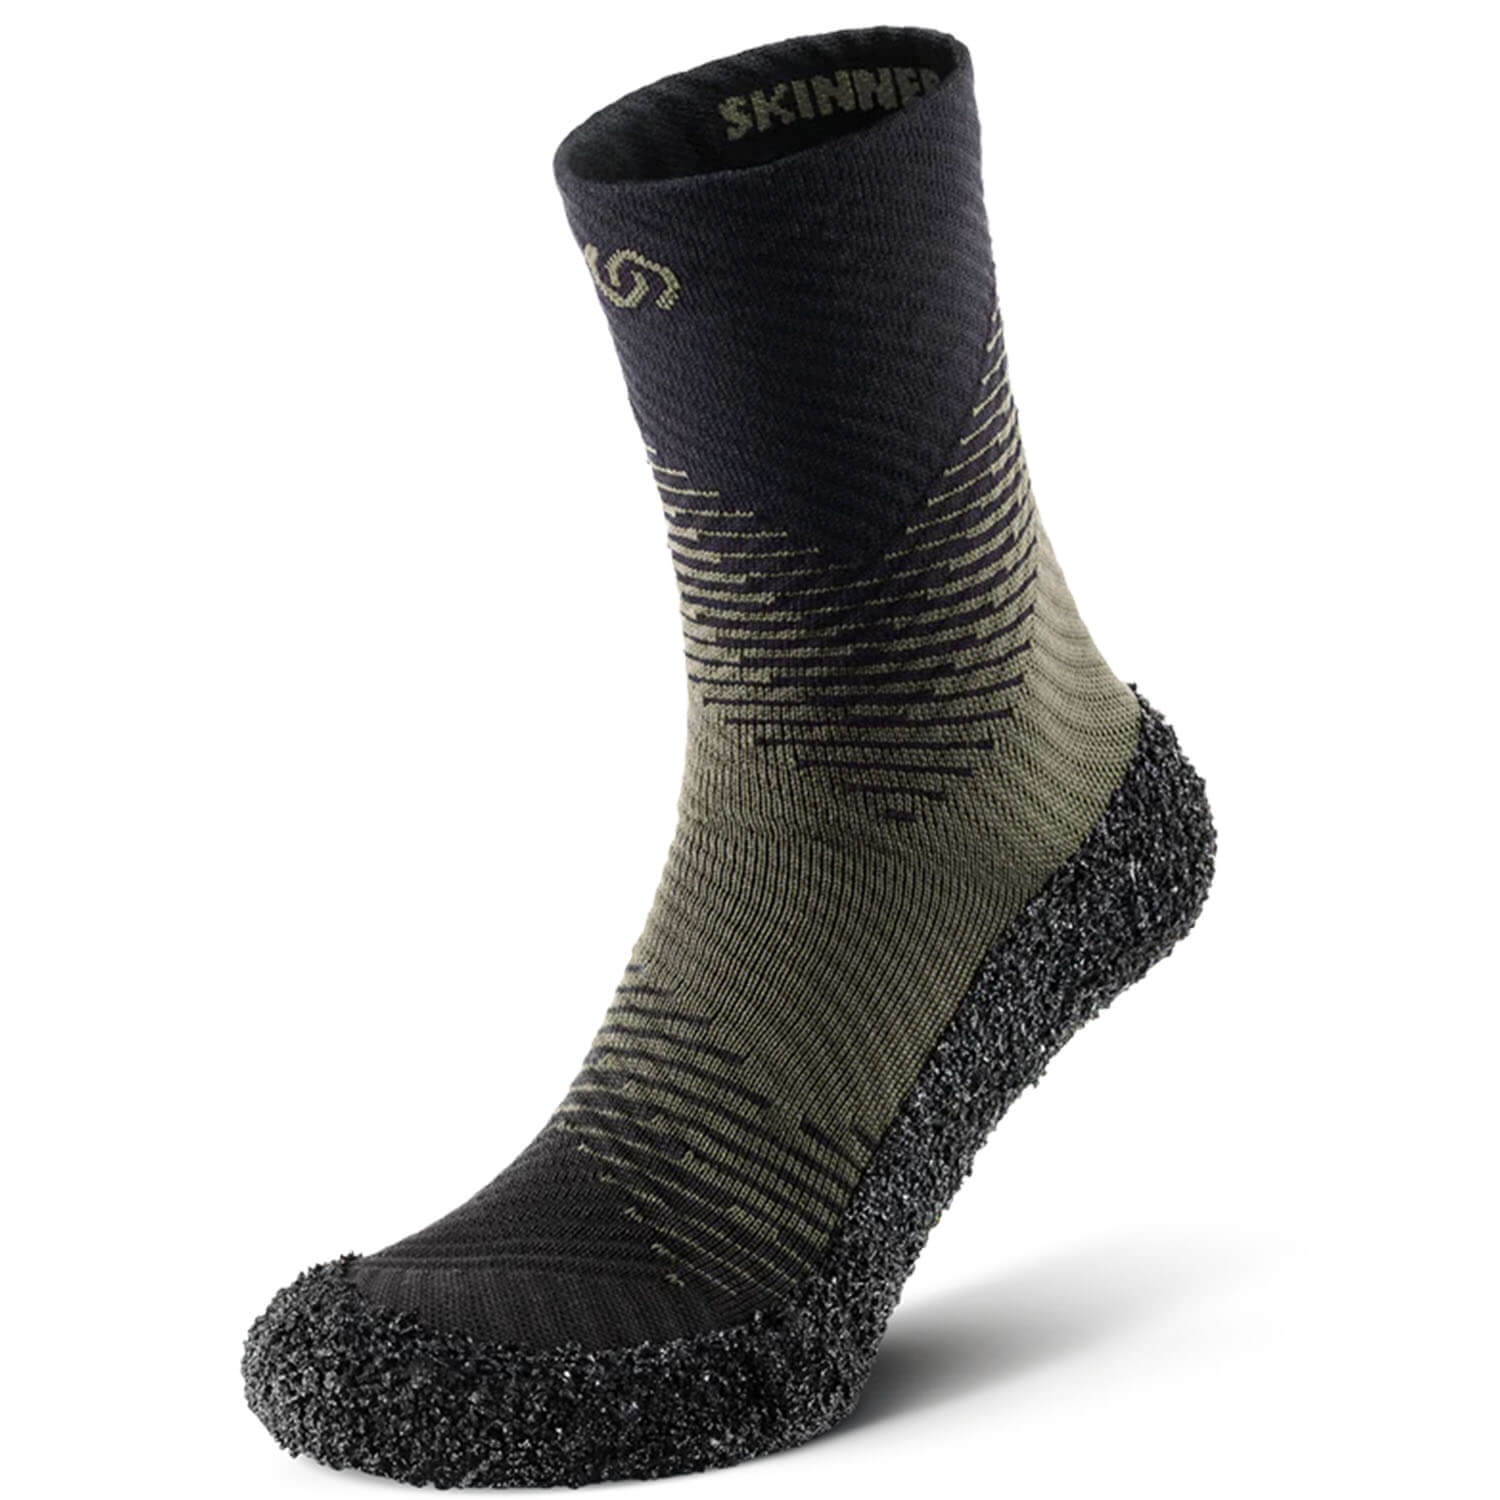 Skinners stalking socks Compression 2.0 (pine) - Footwear